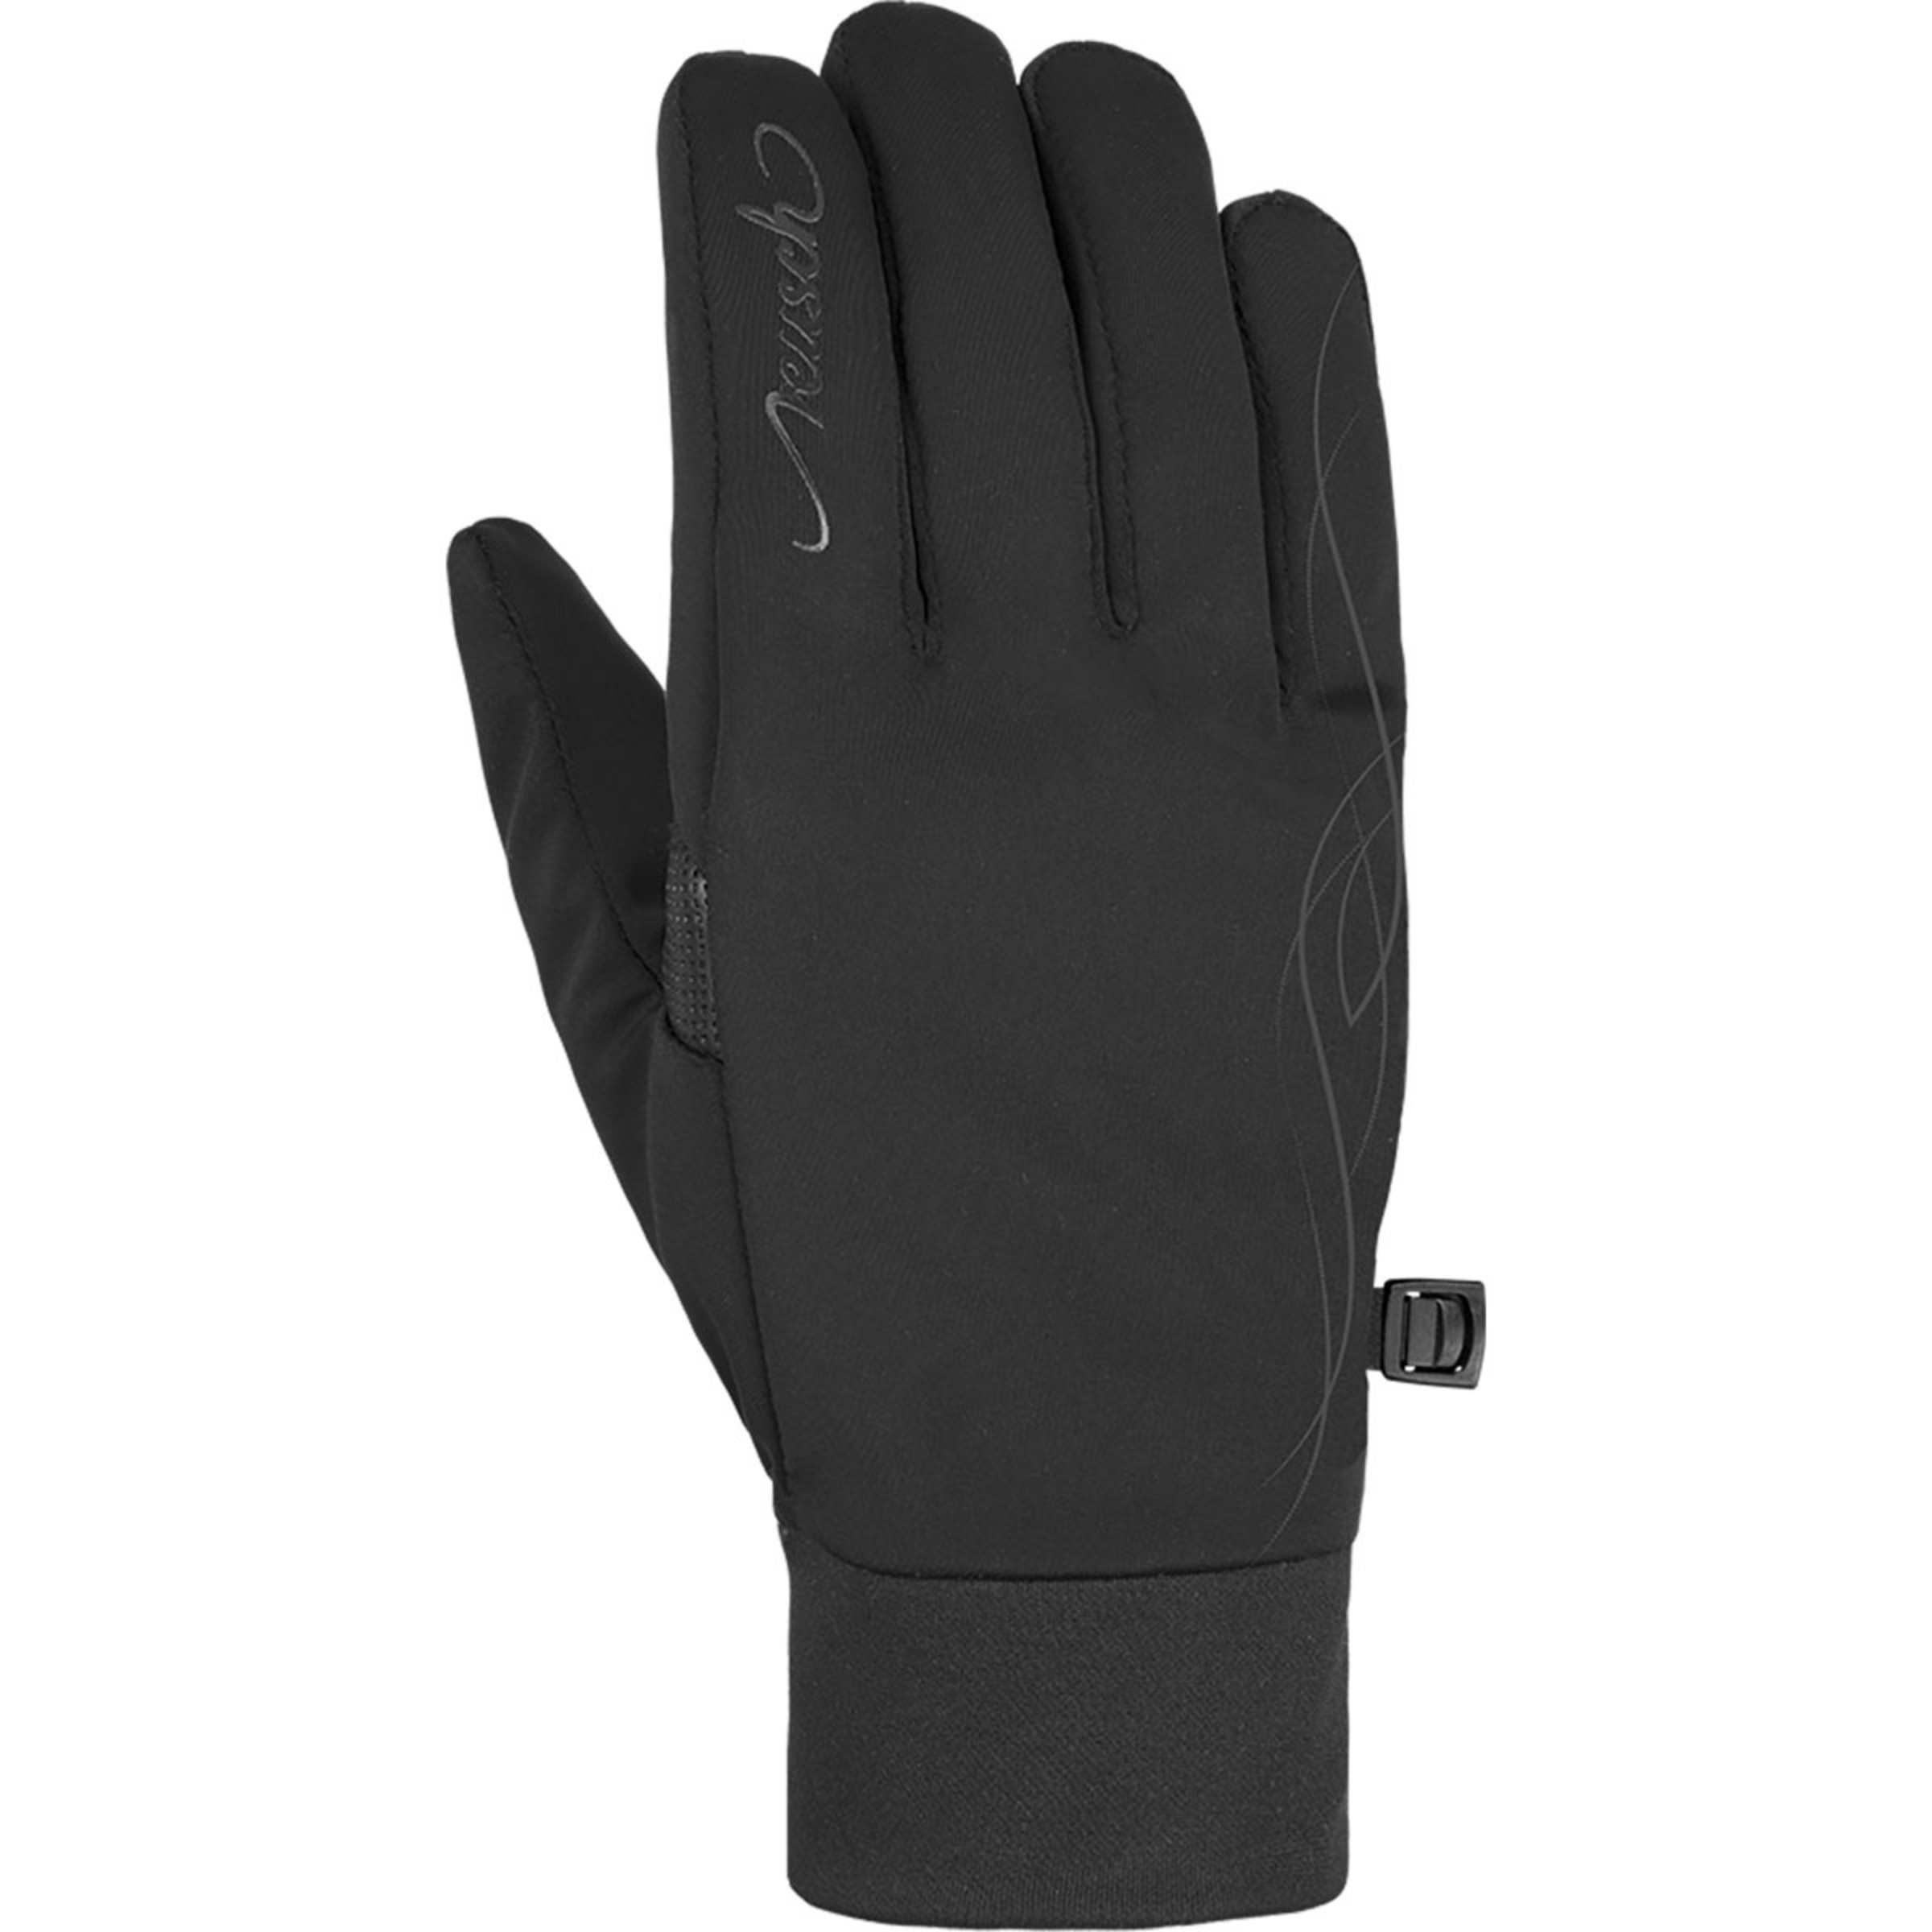 Reusch Damen Handschuhe Touch-Tec | Bergzeit Saskia kaufen